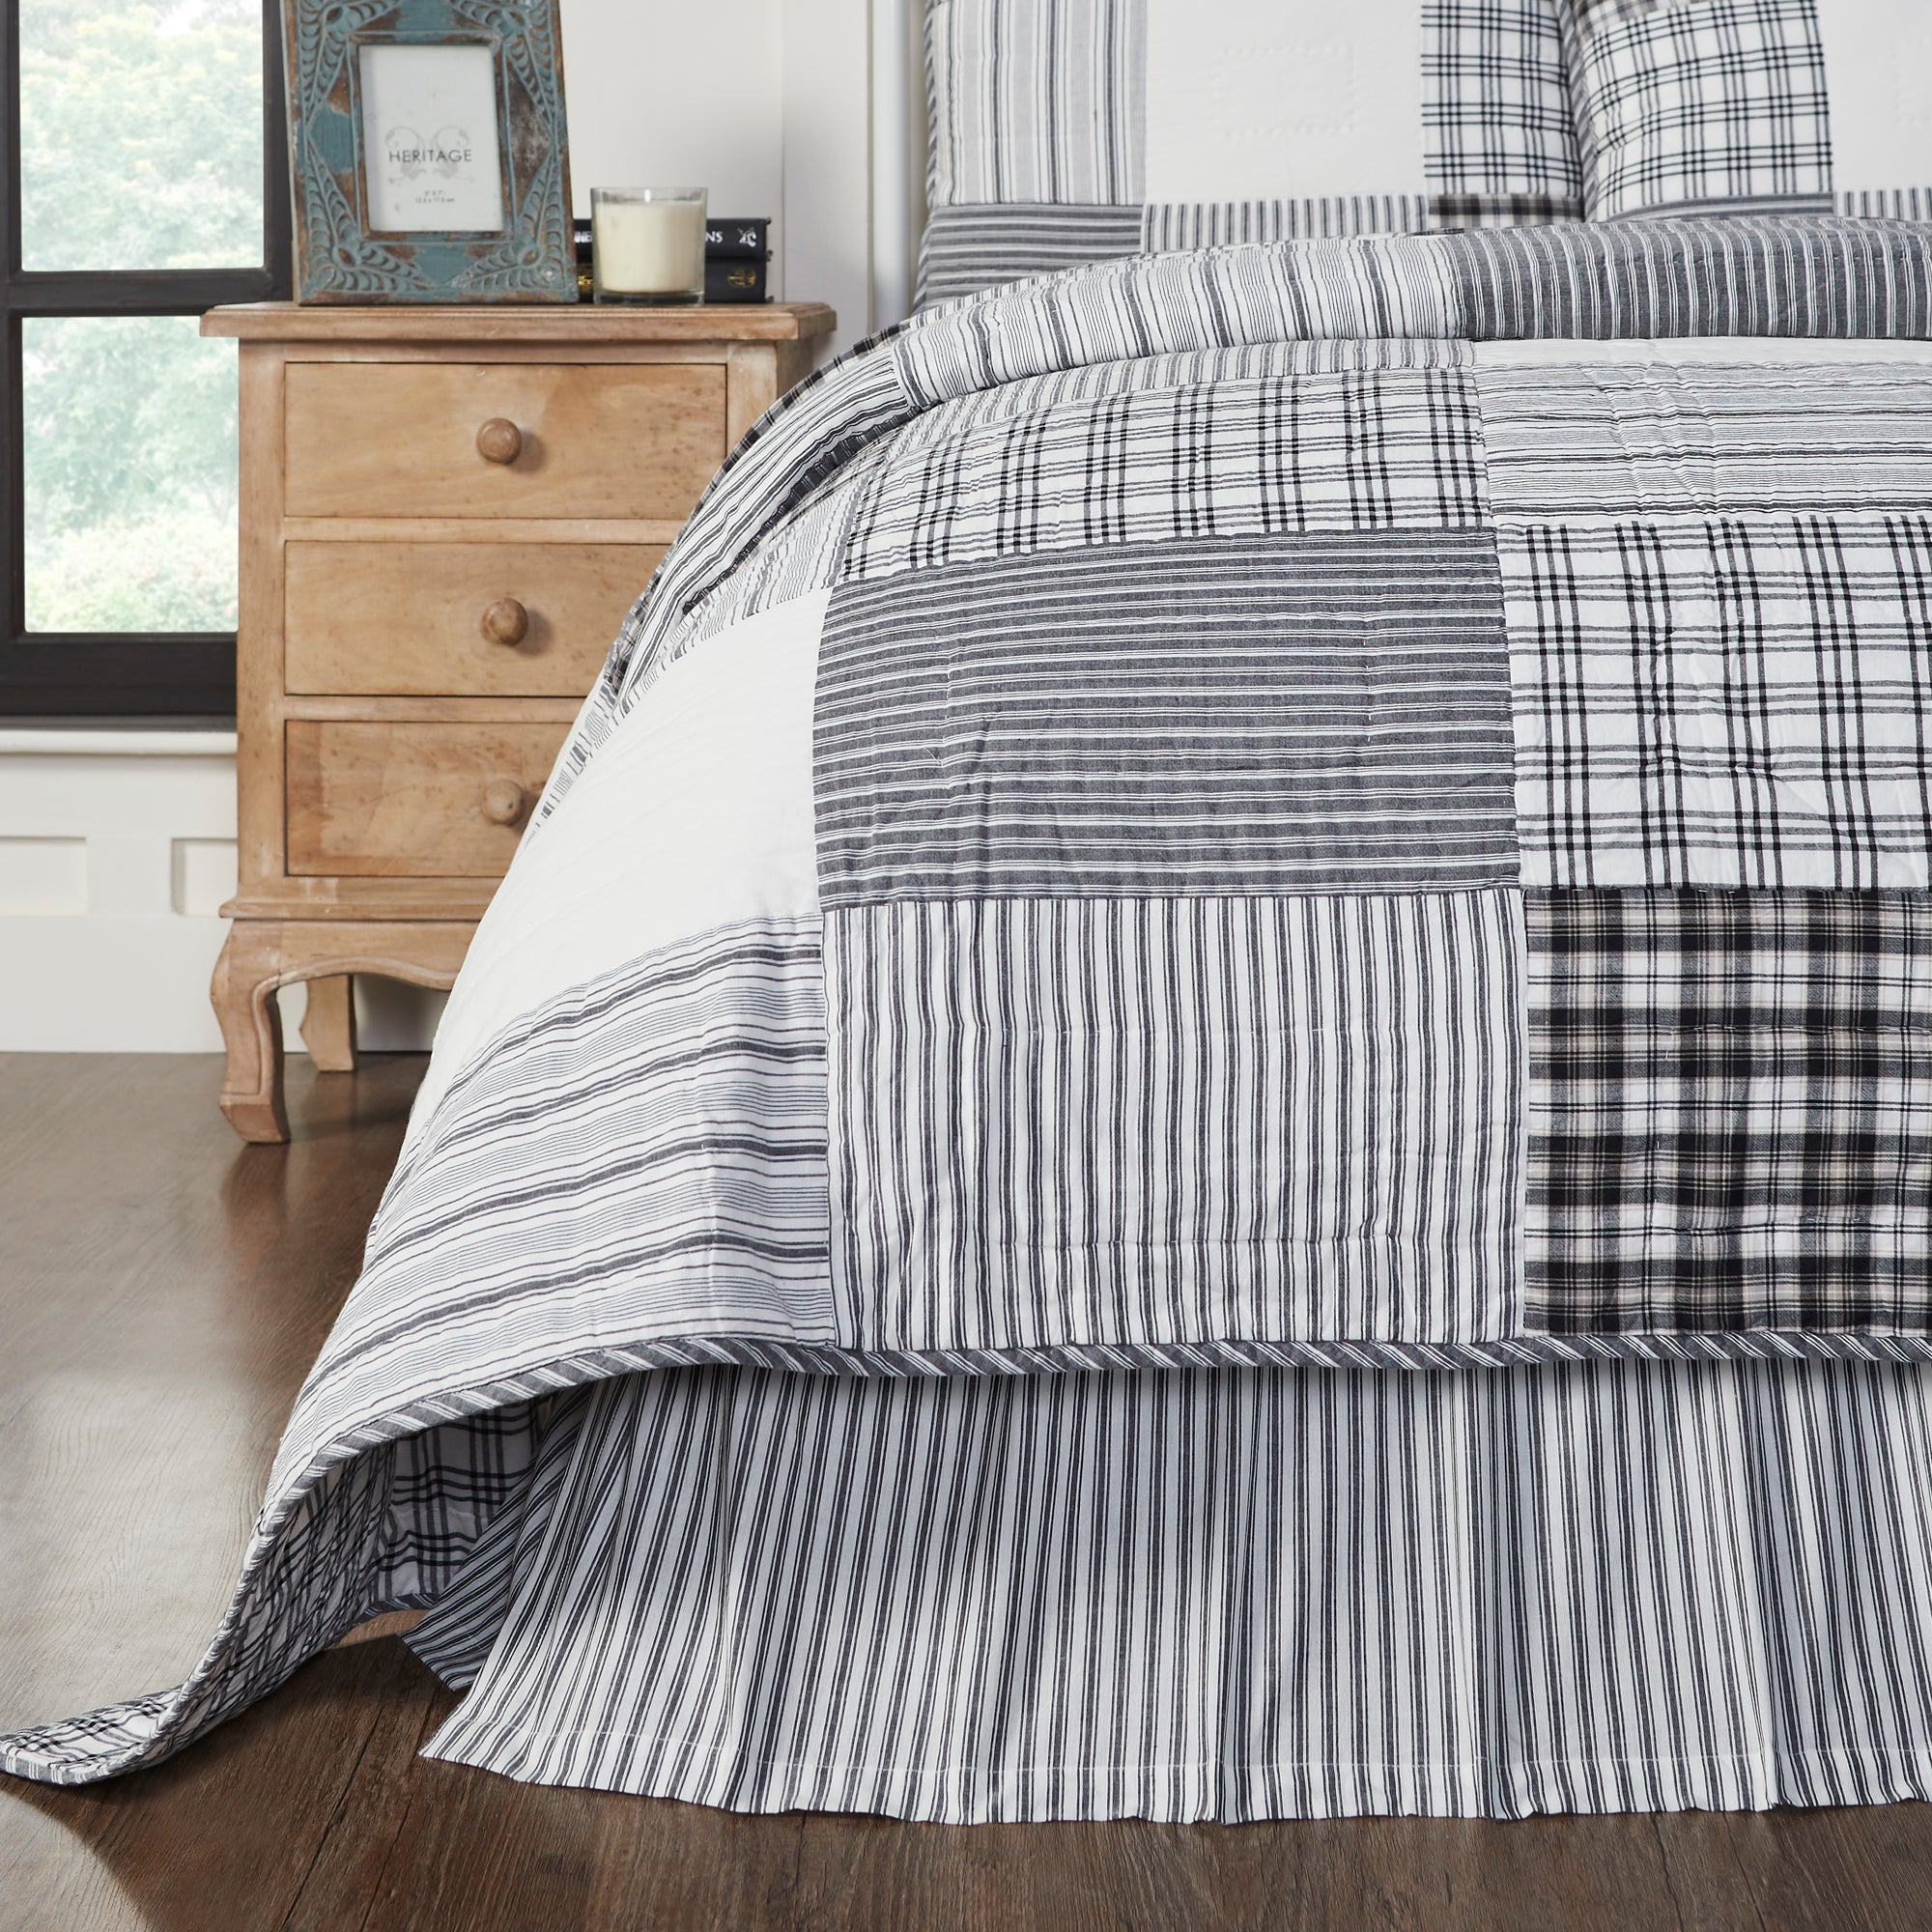 Sawyer Mill Black Ticking Stripe Queen Bed Skirt 60x80x16 VHC Brands